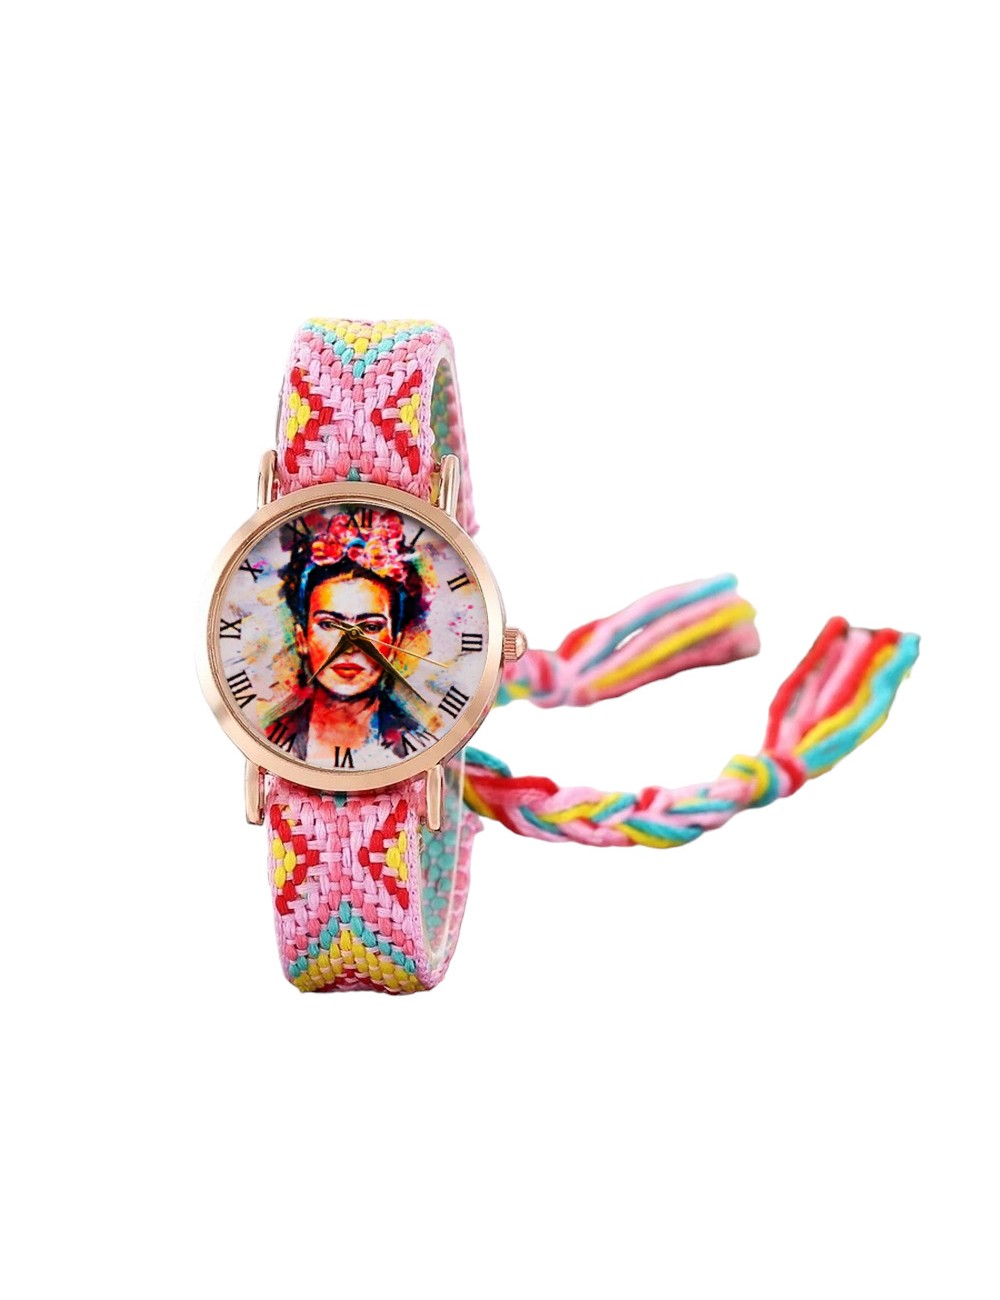 Reloj Frida Color Tejido 39,900.00